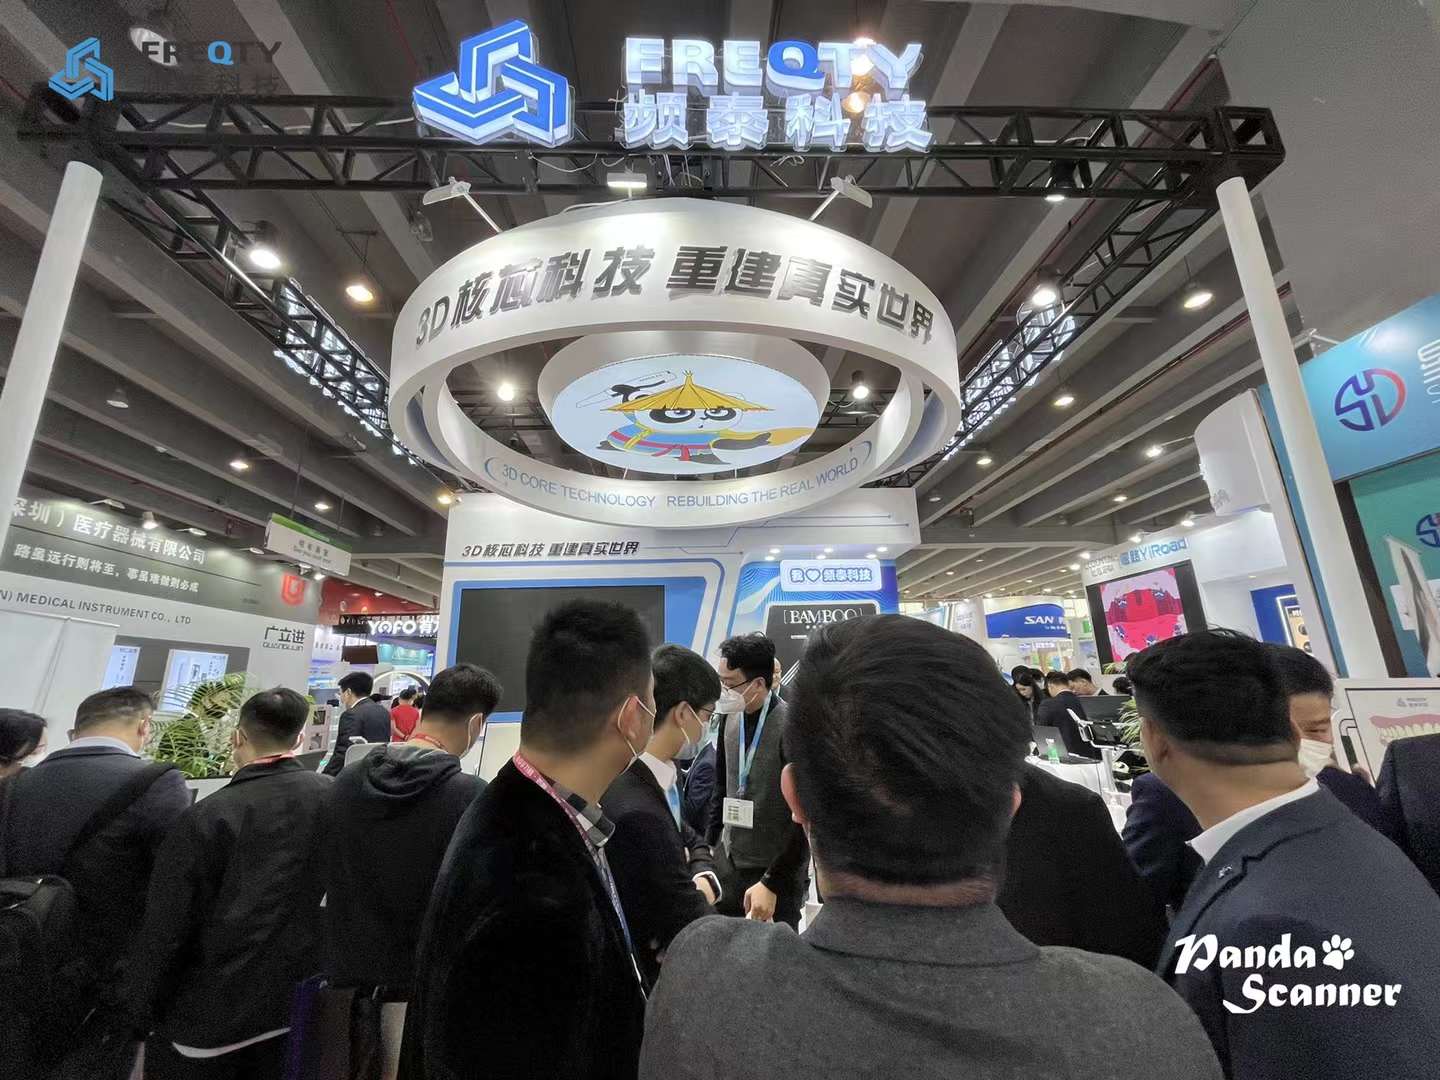 28-я Международная выставка South Dental China International Expo завершилась успешно